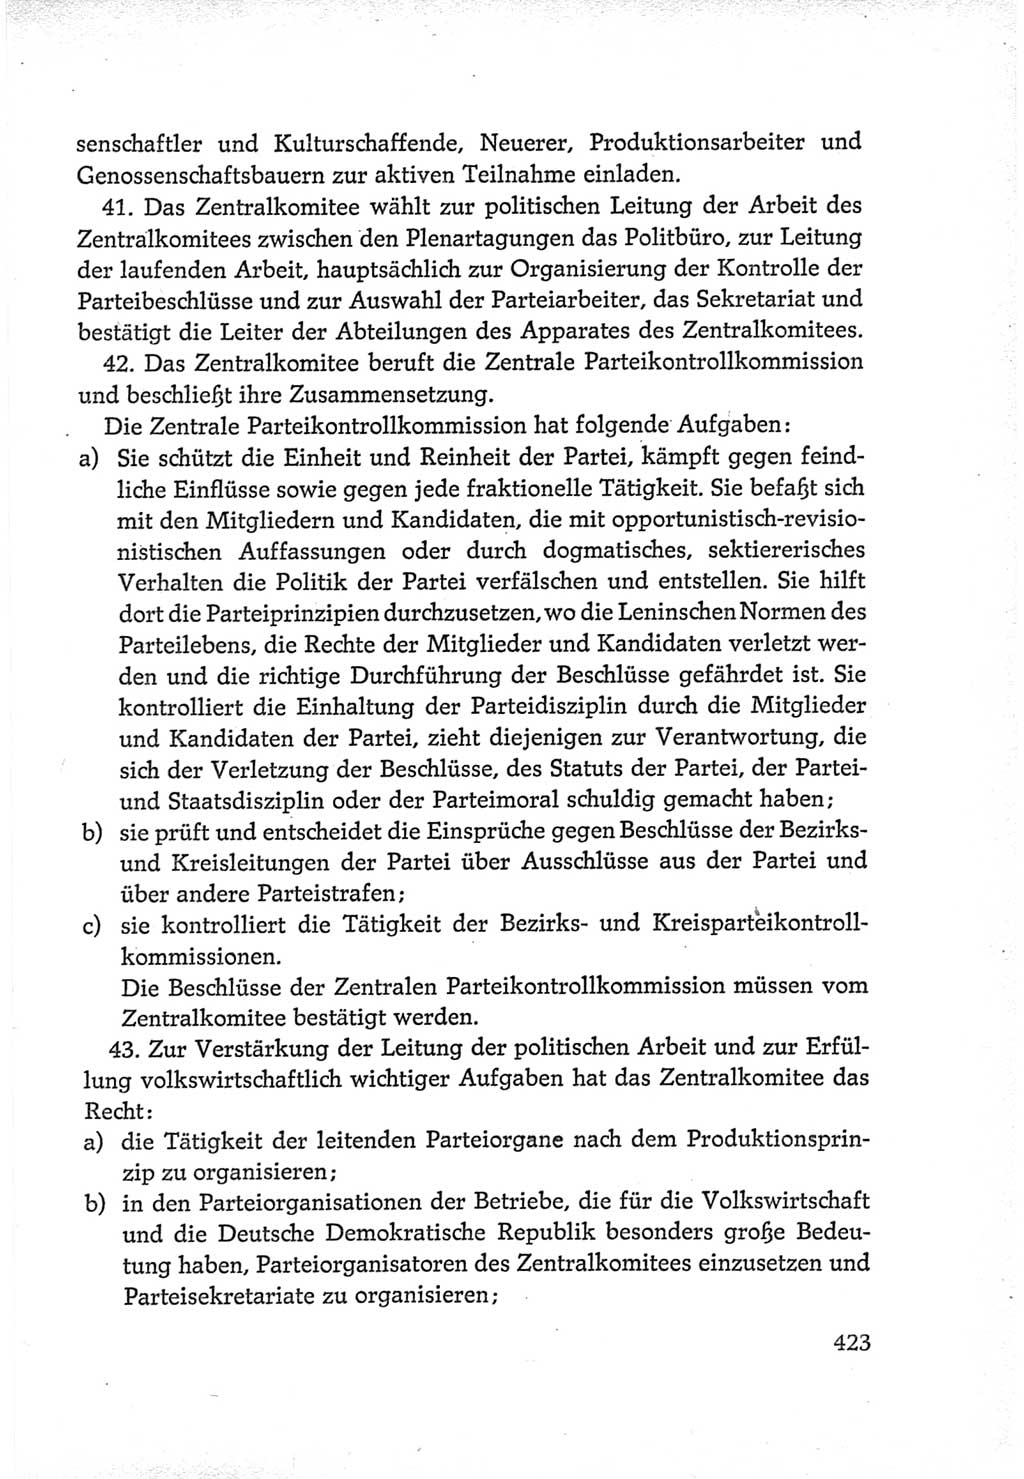 Protokoll der Verhandlungen des Ⅵ. Parteitages der Sozialistischen Einheitspartei Deutschlands (SED) [Deutsche Demokratische Republik (DDR)] 1963, Band Ⅳ, Seite 423 (Prot. Verh. Ⅵ. PT SED DDR 1963, Bd. Ⅳ, S. 423)